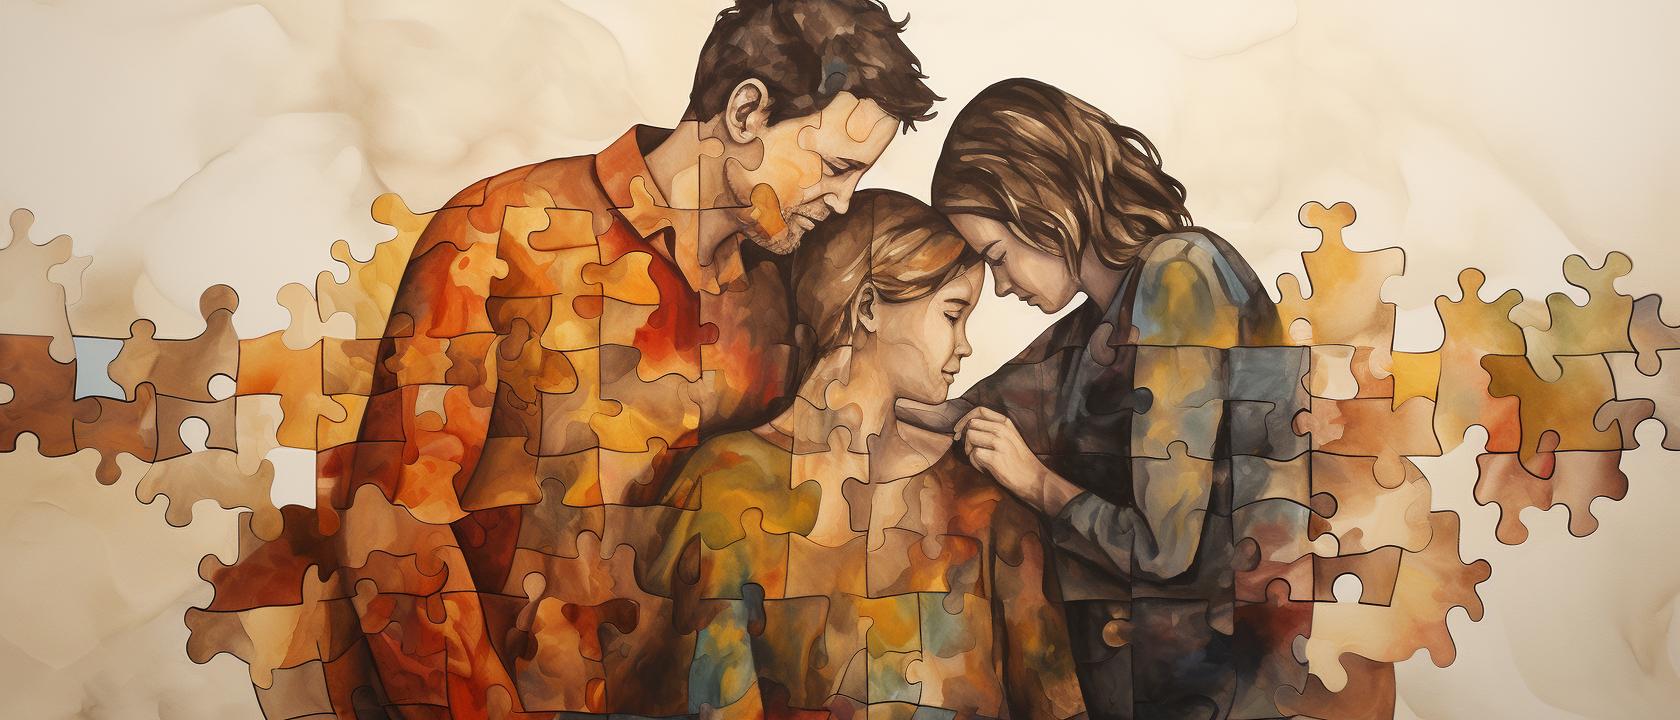 Obrazek przedstawiający rodzinę poskładaną z puzzli